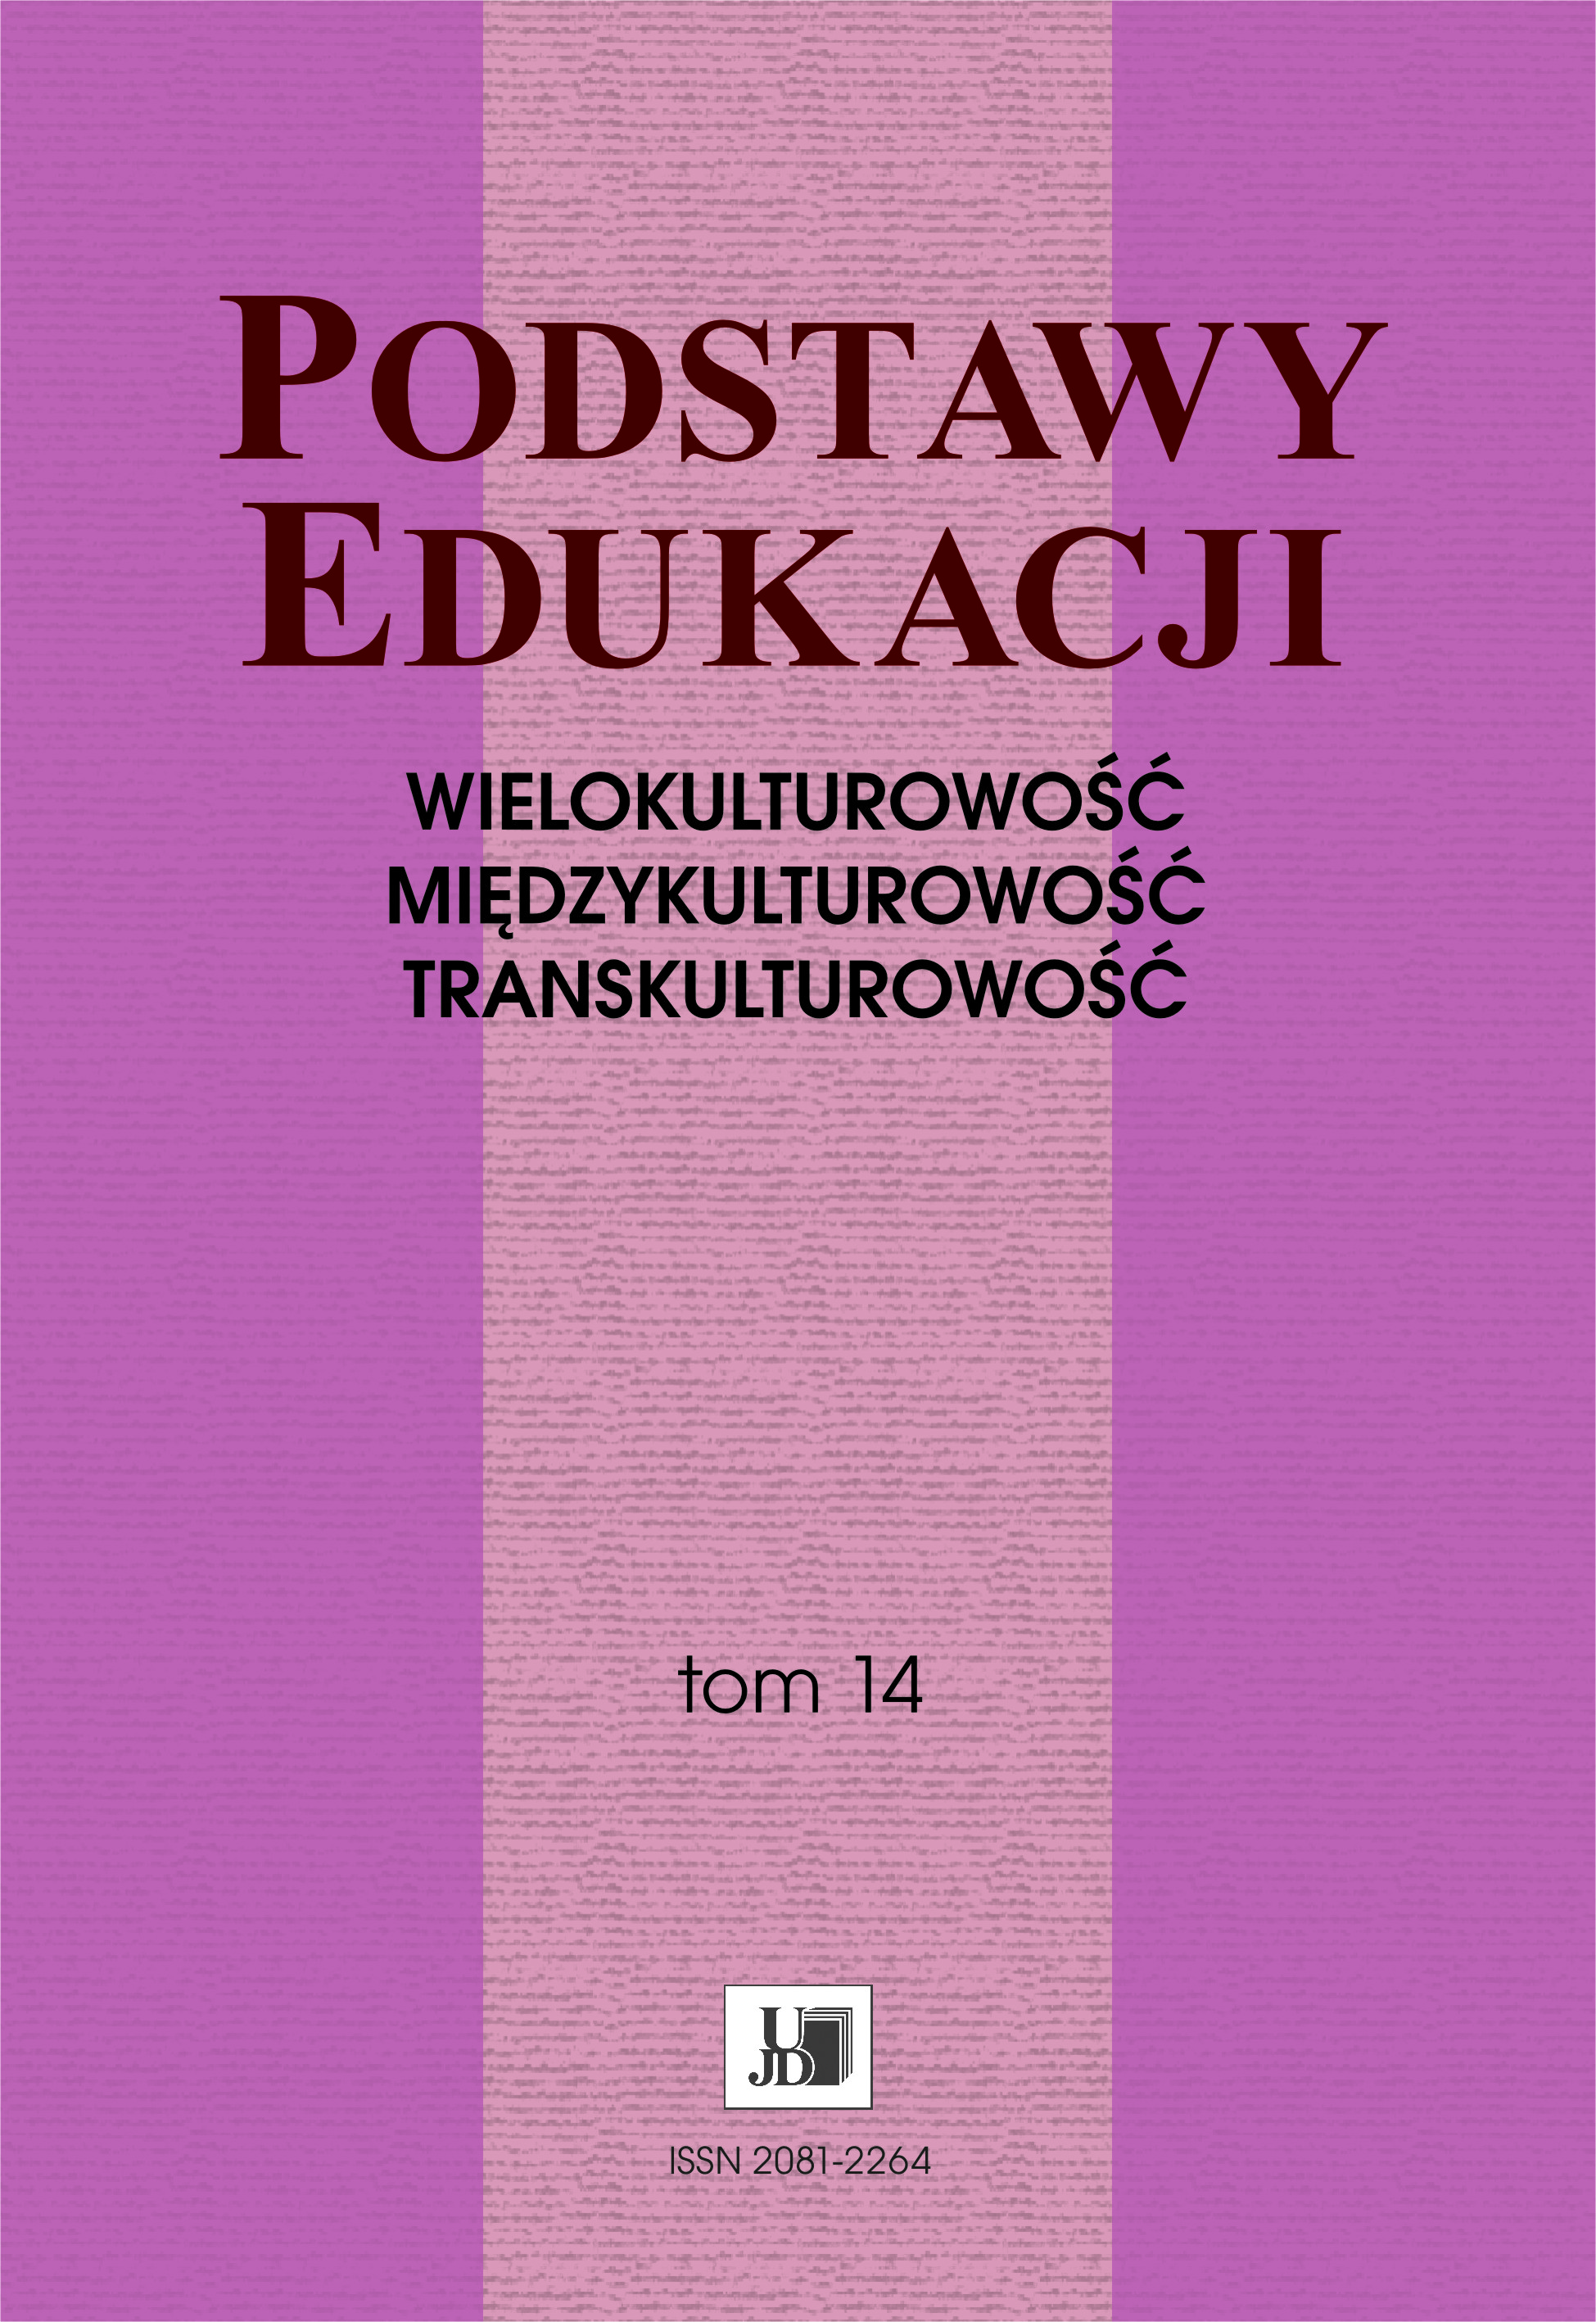 Implementacja aspektów międzykulturowych do programu nauczania polskiego języka migowego jako obcego na przykładzie kursu MOOC